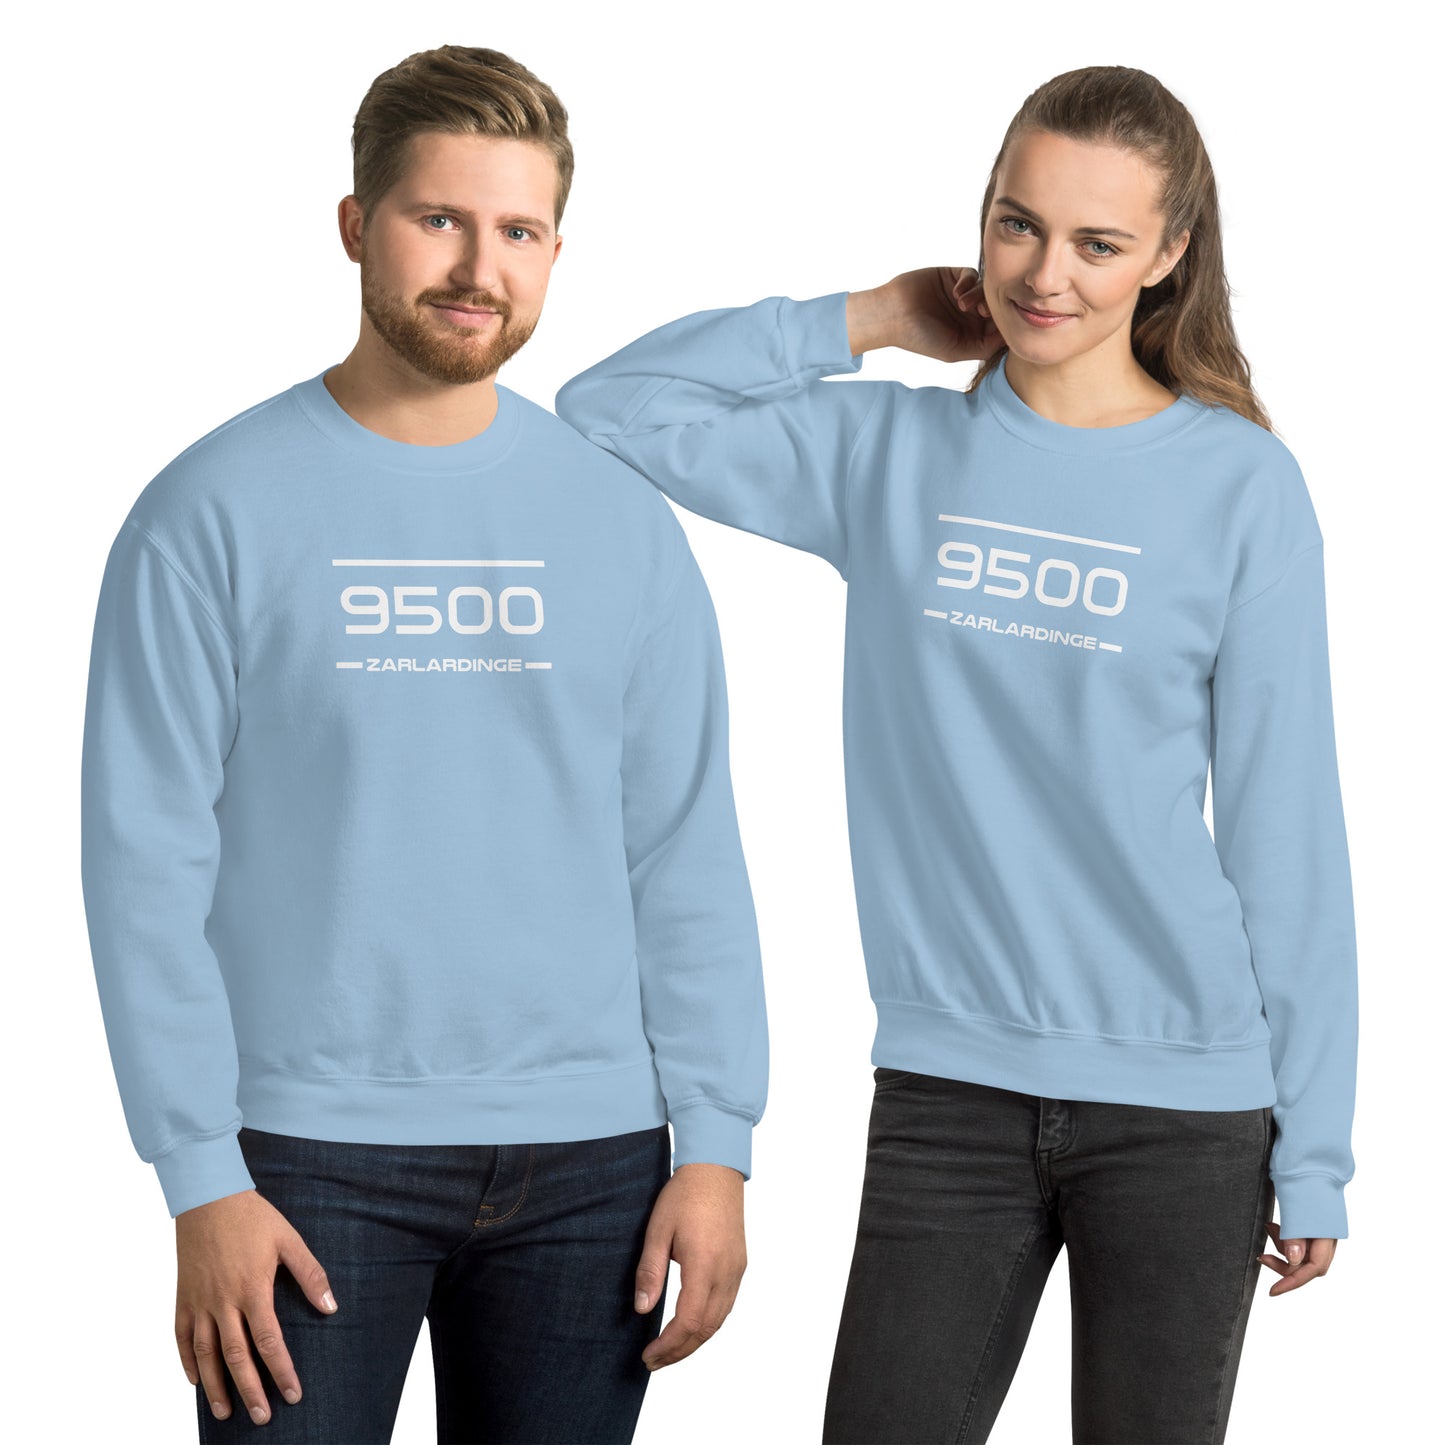 Sweater - 9500 - Zarlardinge (M/V)